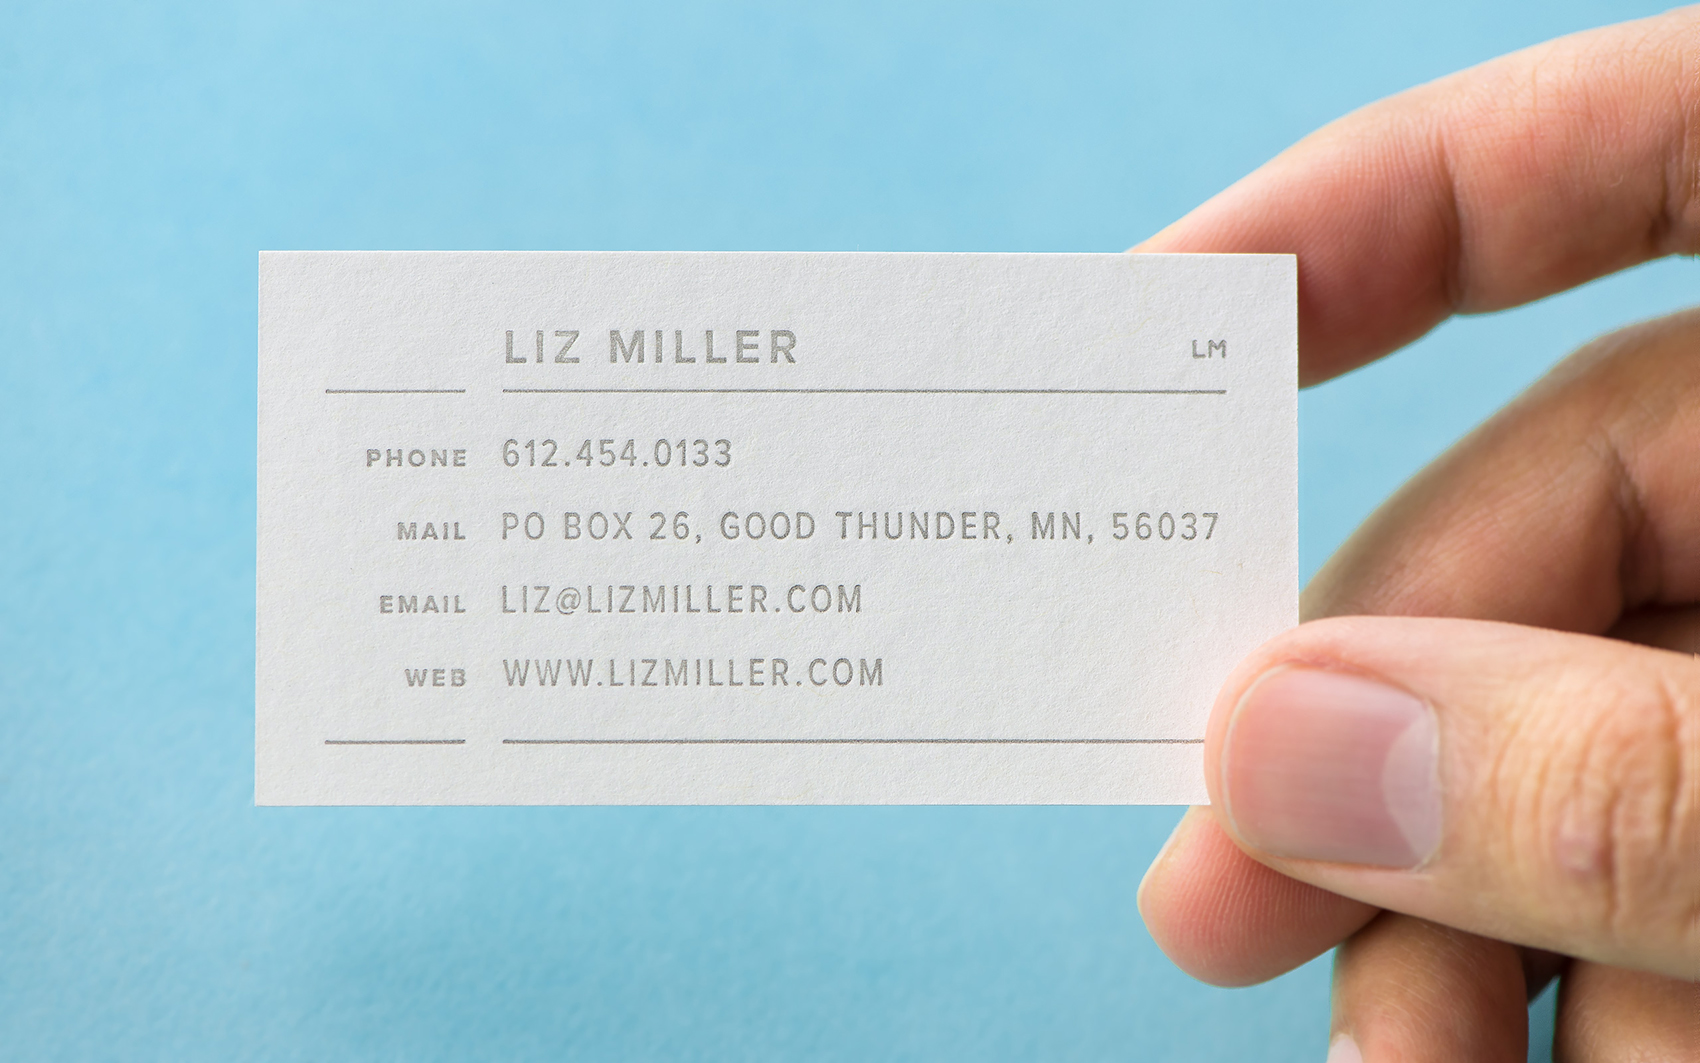 Liz Miller business card in a hand